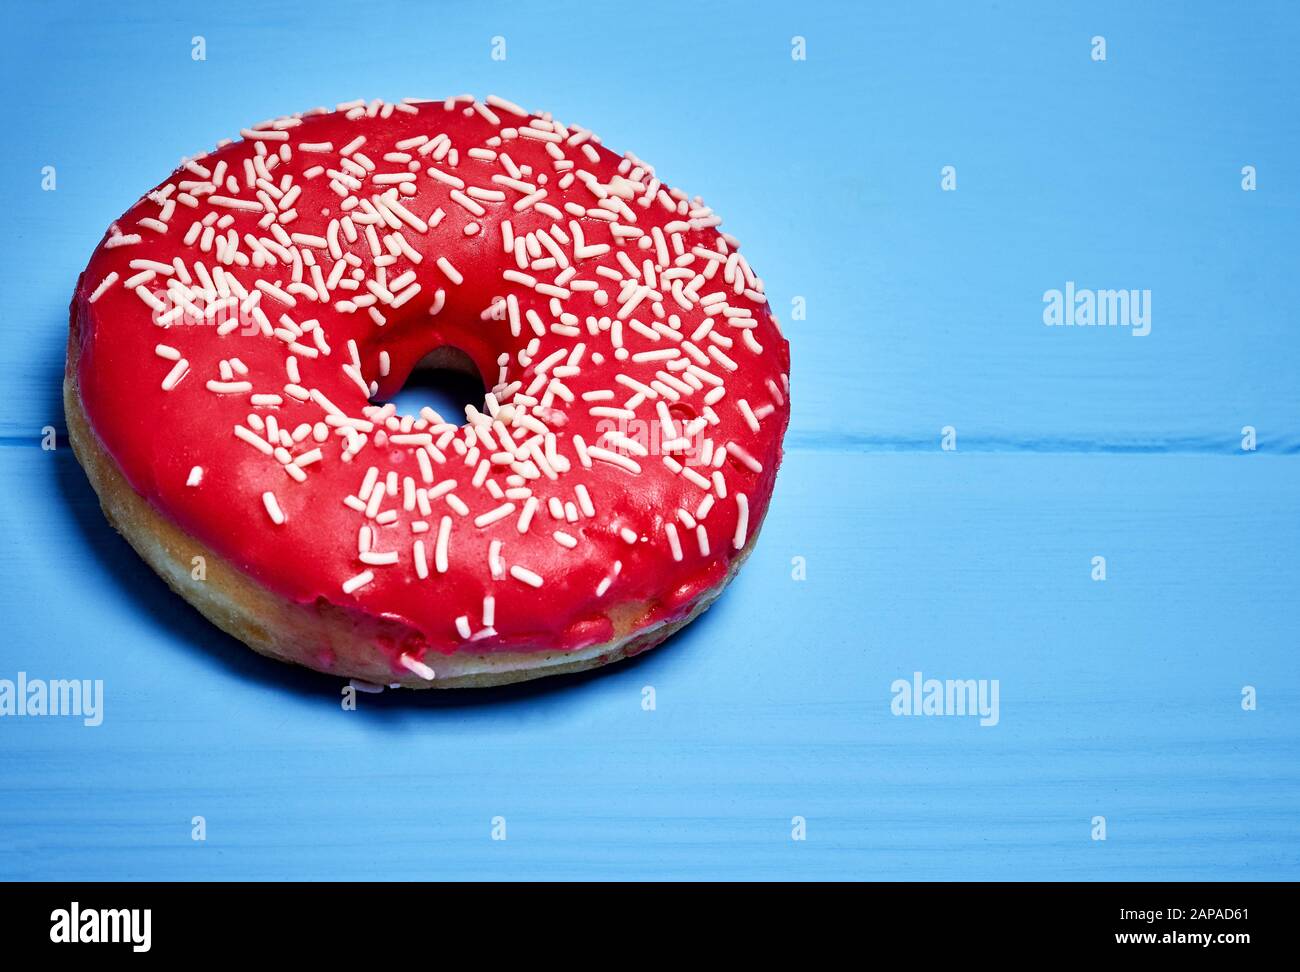 pink glazed donut on a blue background Stock Photo